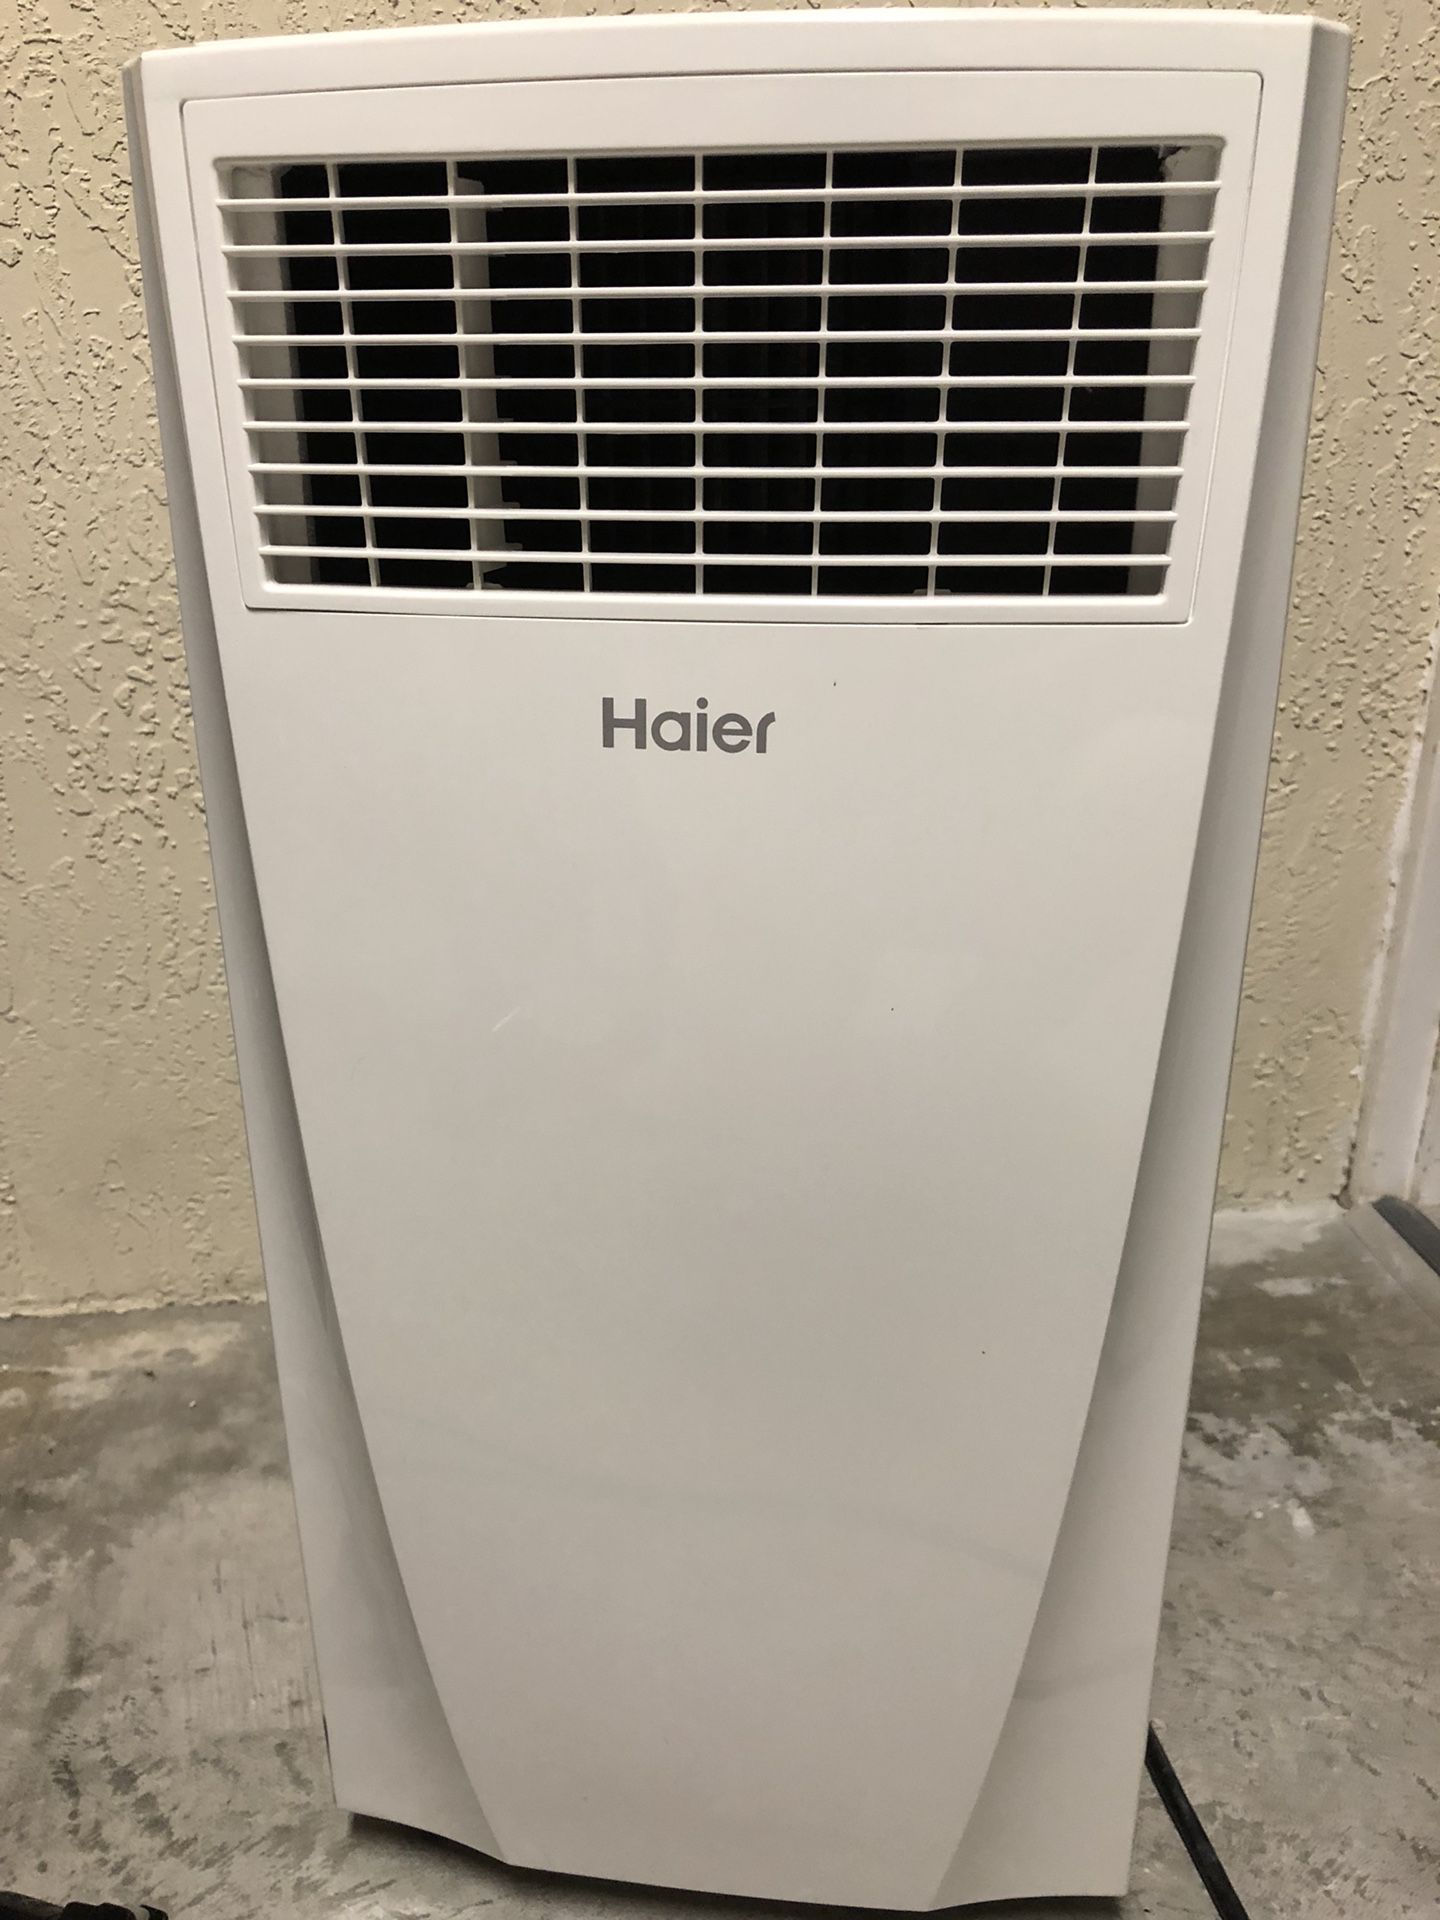 HAIER 10,000-BTU Portable Air Conditioner